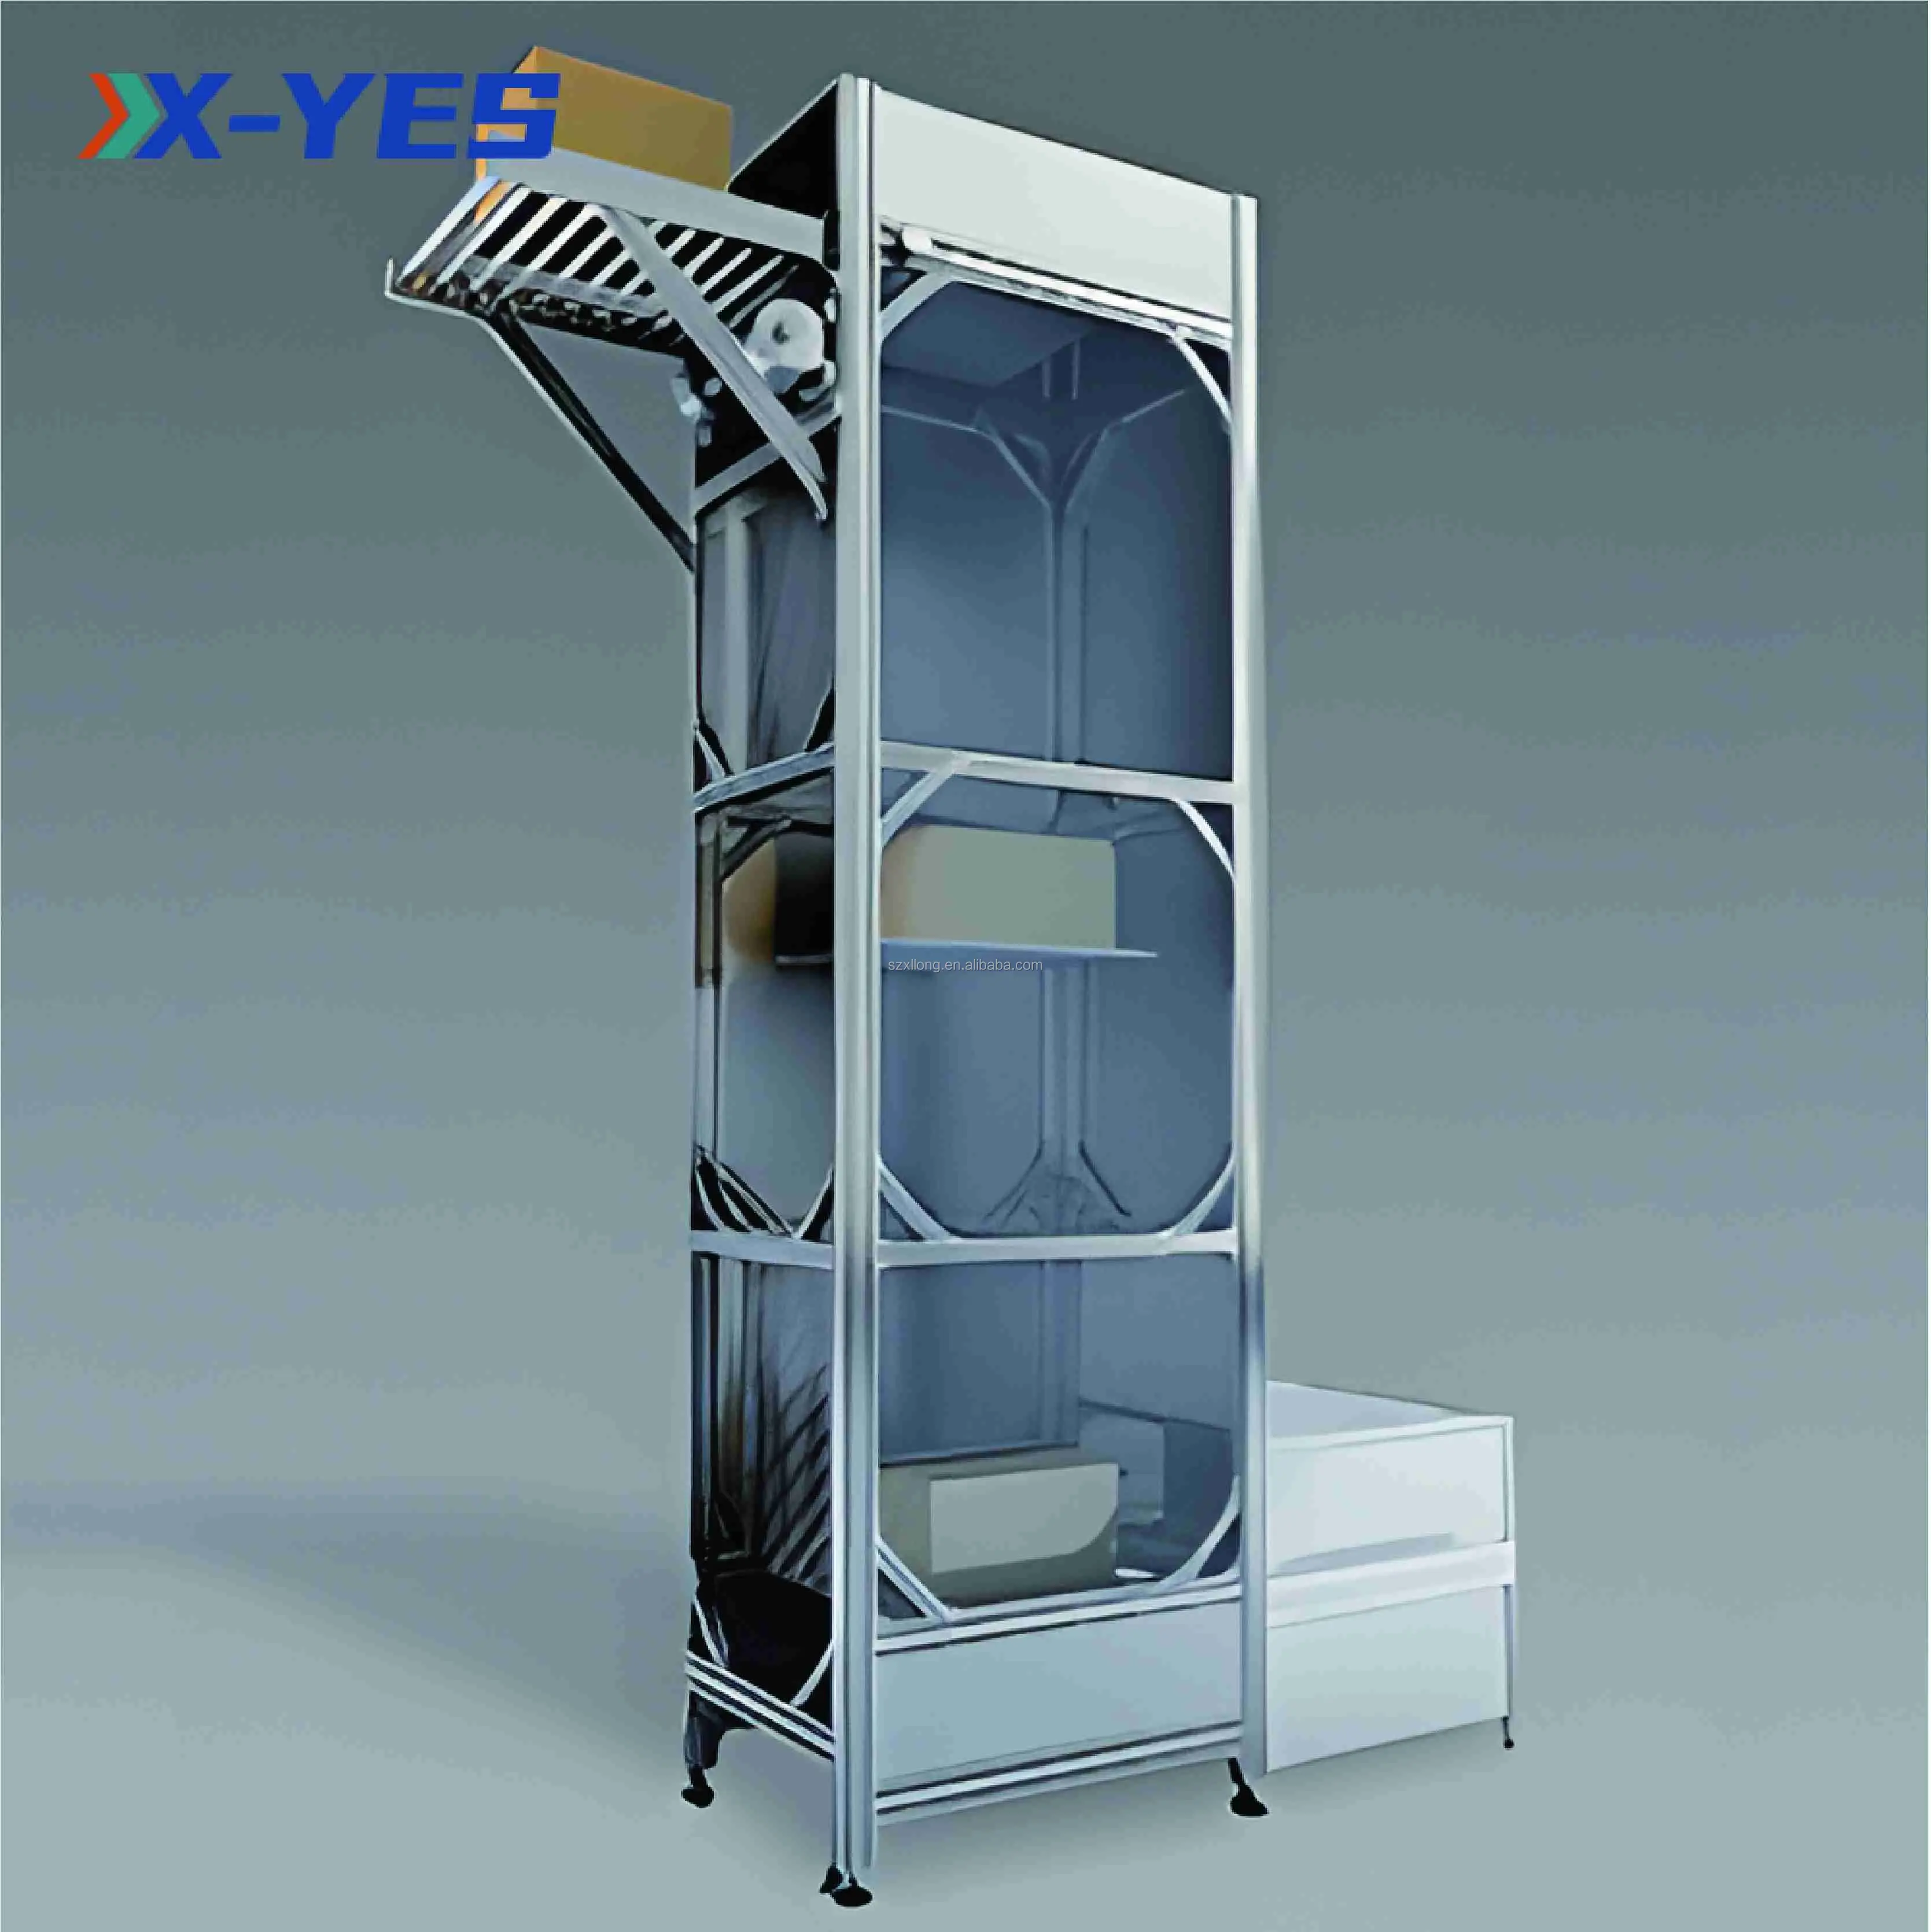 X-YES Otimizando estruturas de custos, aumentando os lucros, transportador vertical contínuo, transportador de elevador vertical